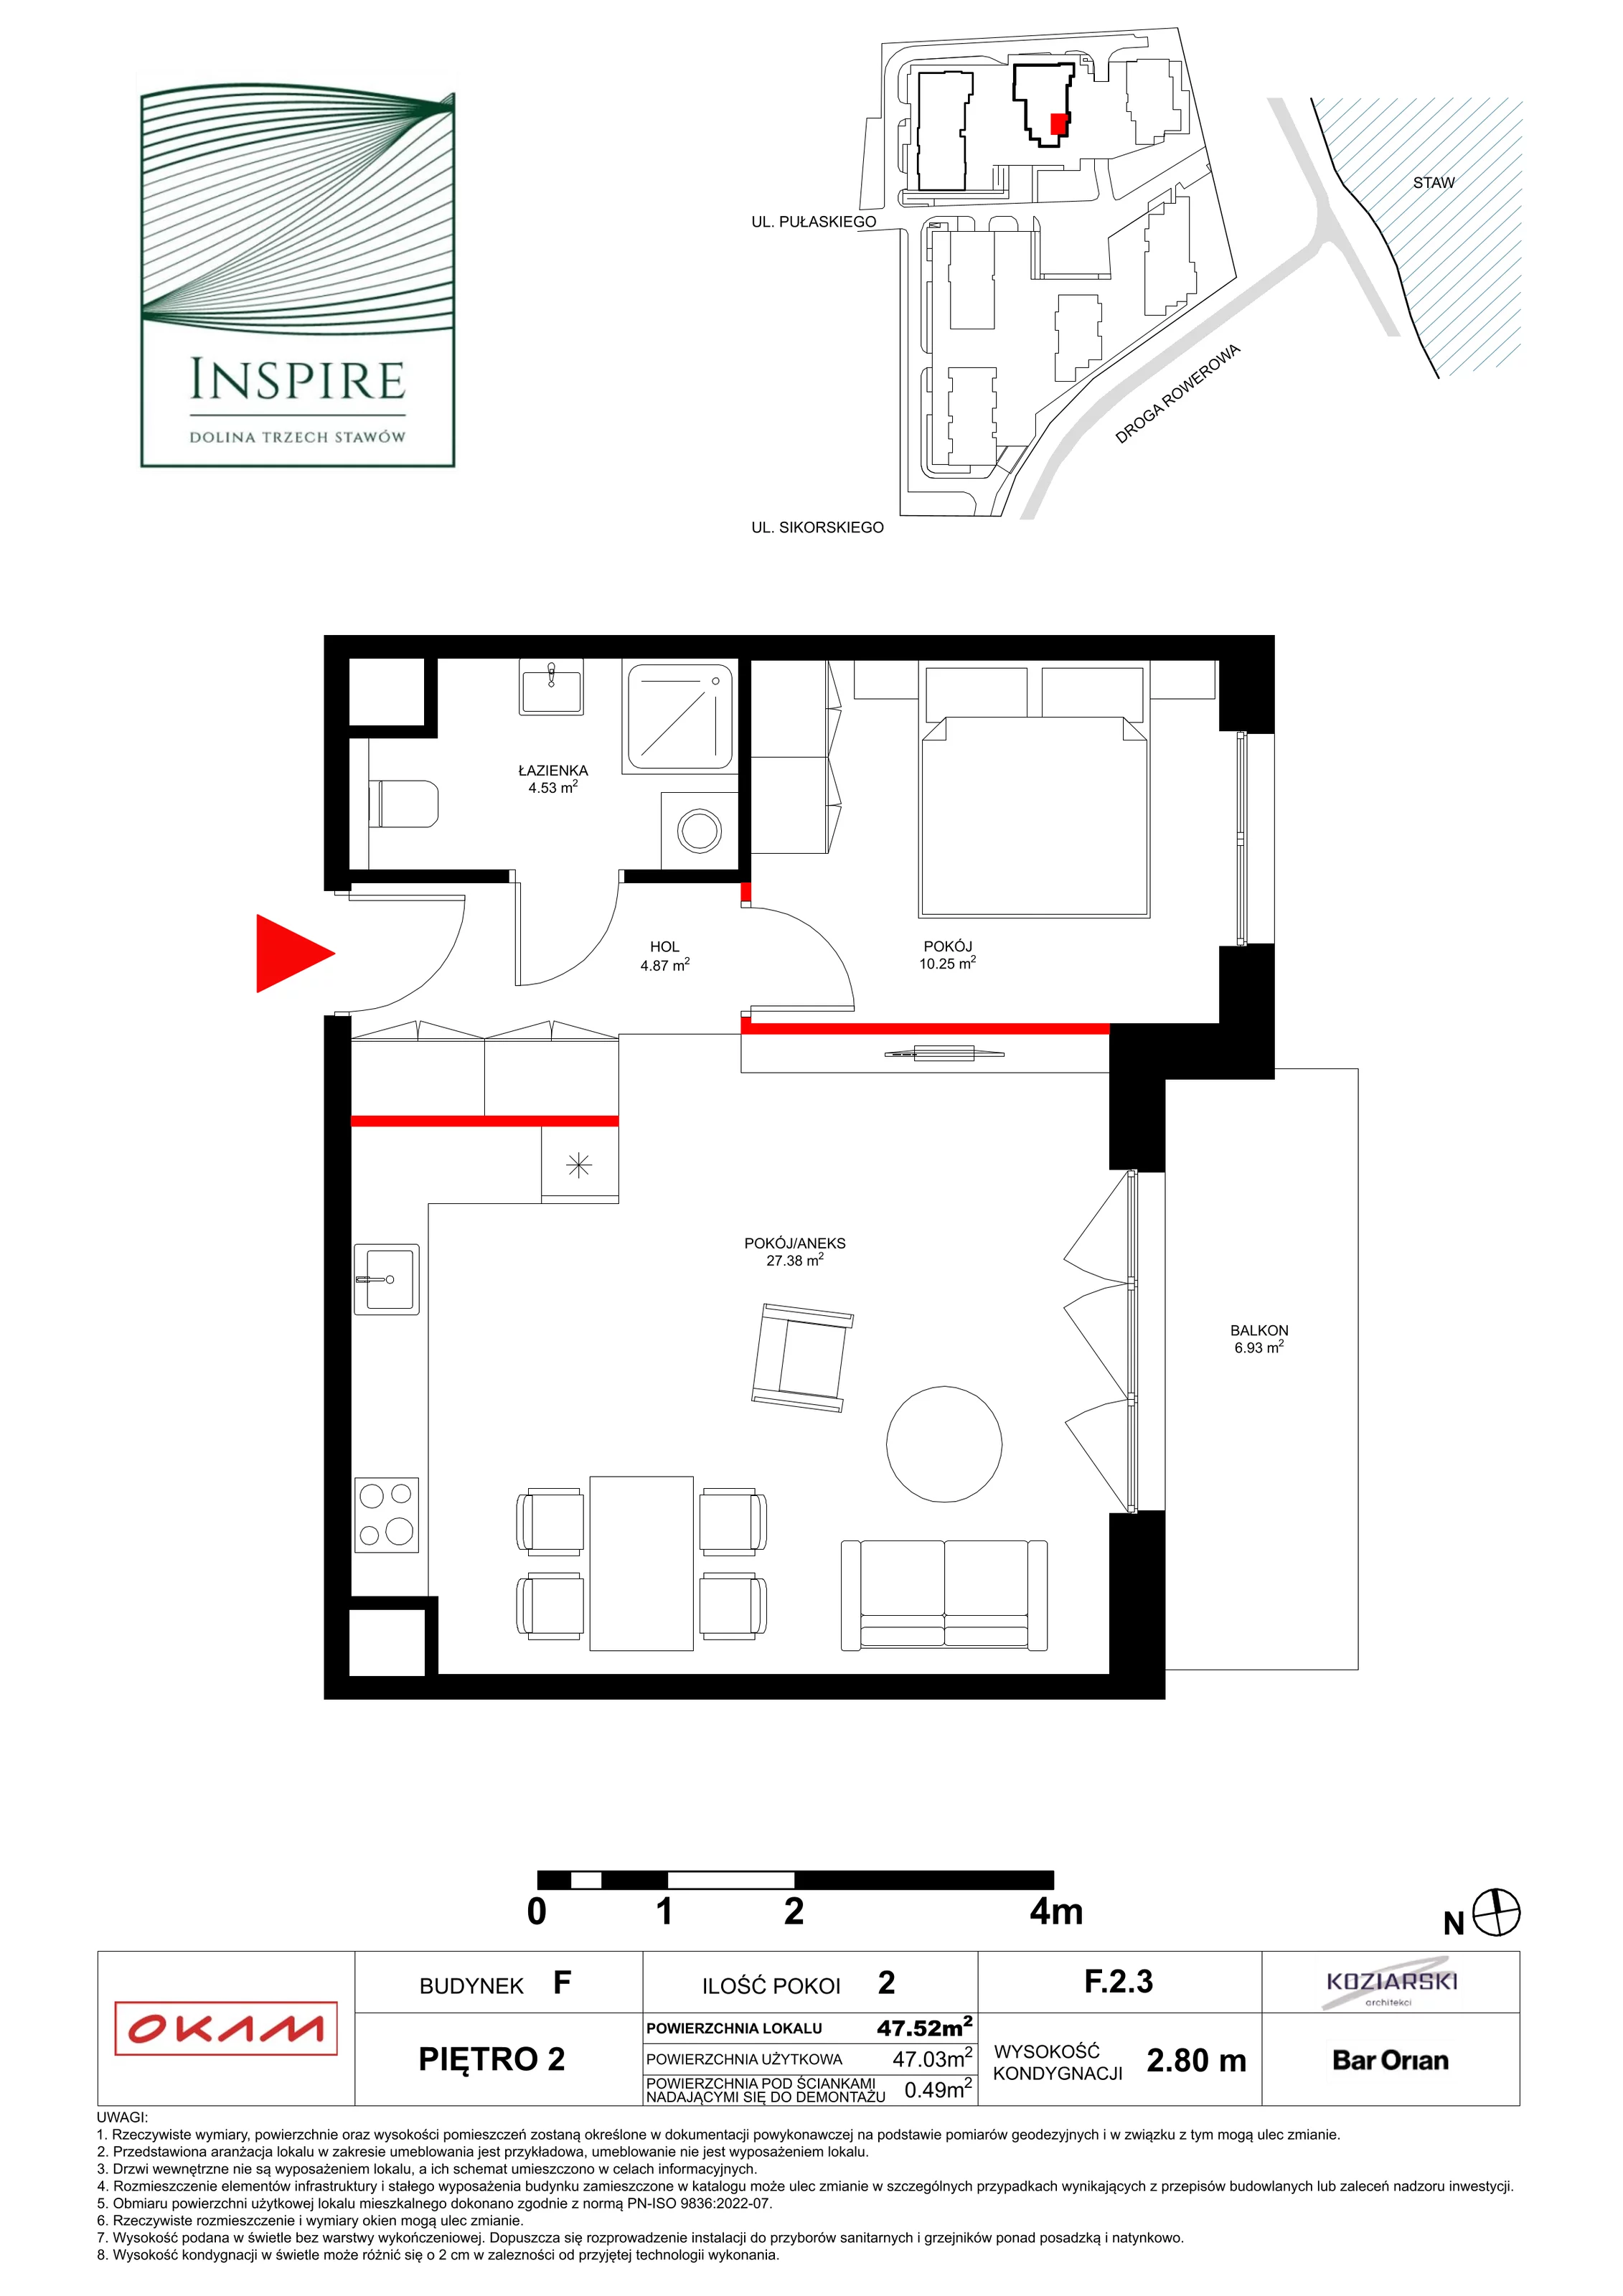 Apartament 46,99 m², piętro 2, oferta nr F.2.3, Inspire, Katowice, Osiedle Paderewskiego-Muchowiec, Dolina Trzech Stawów, ul. gen. Sikorskiego 41